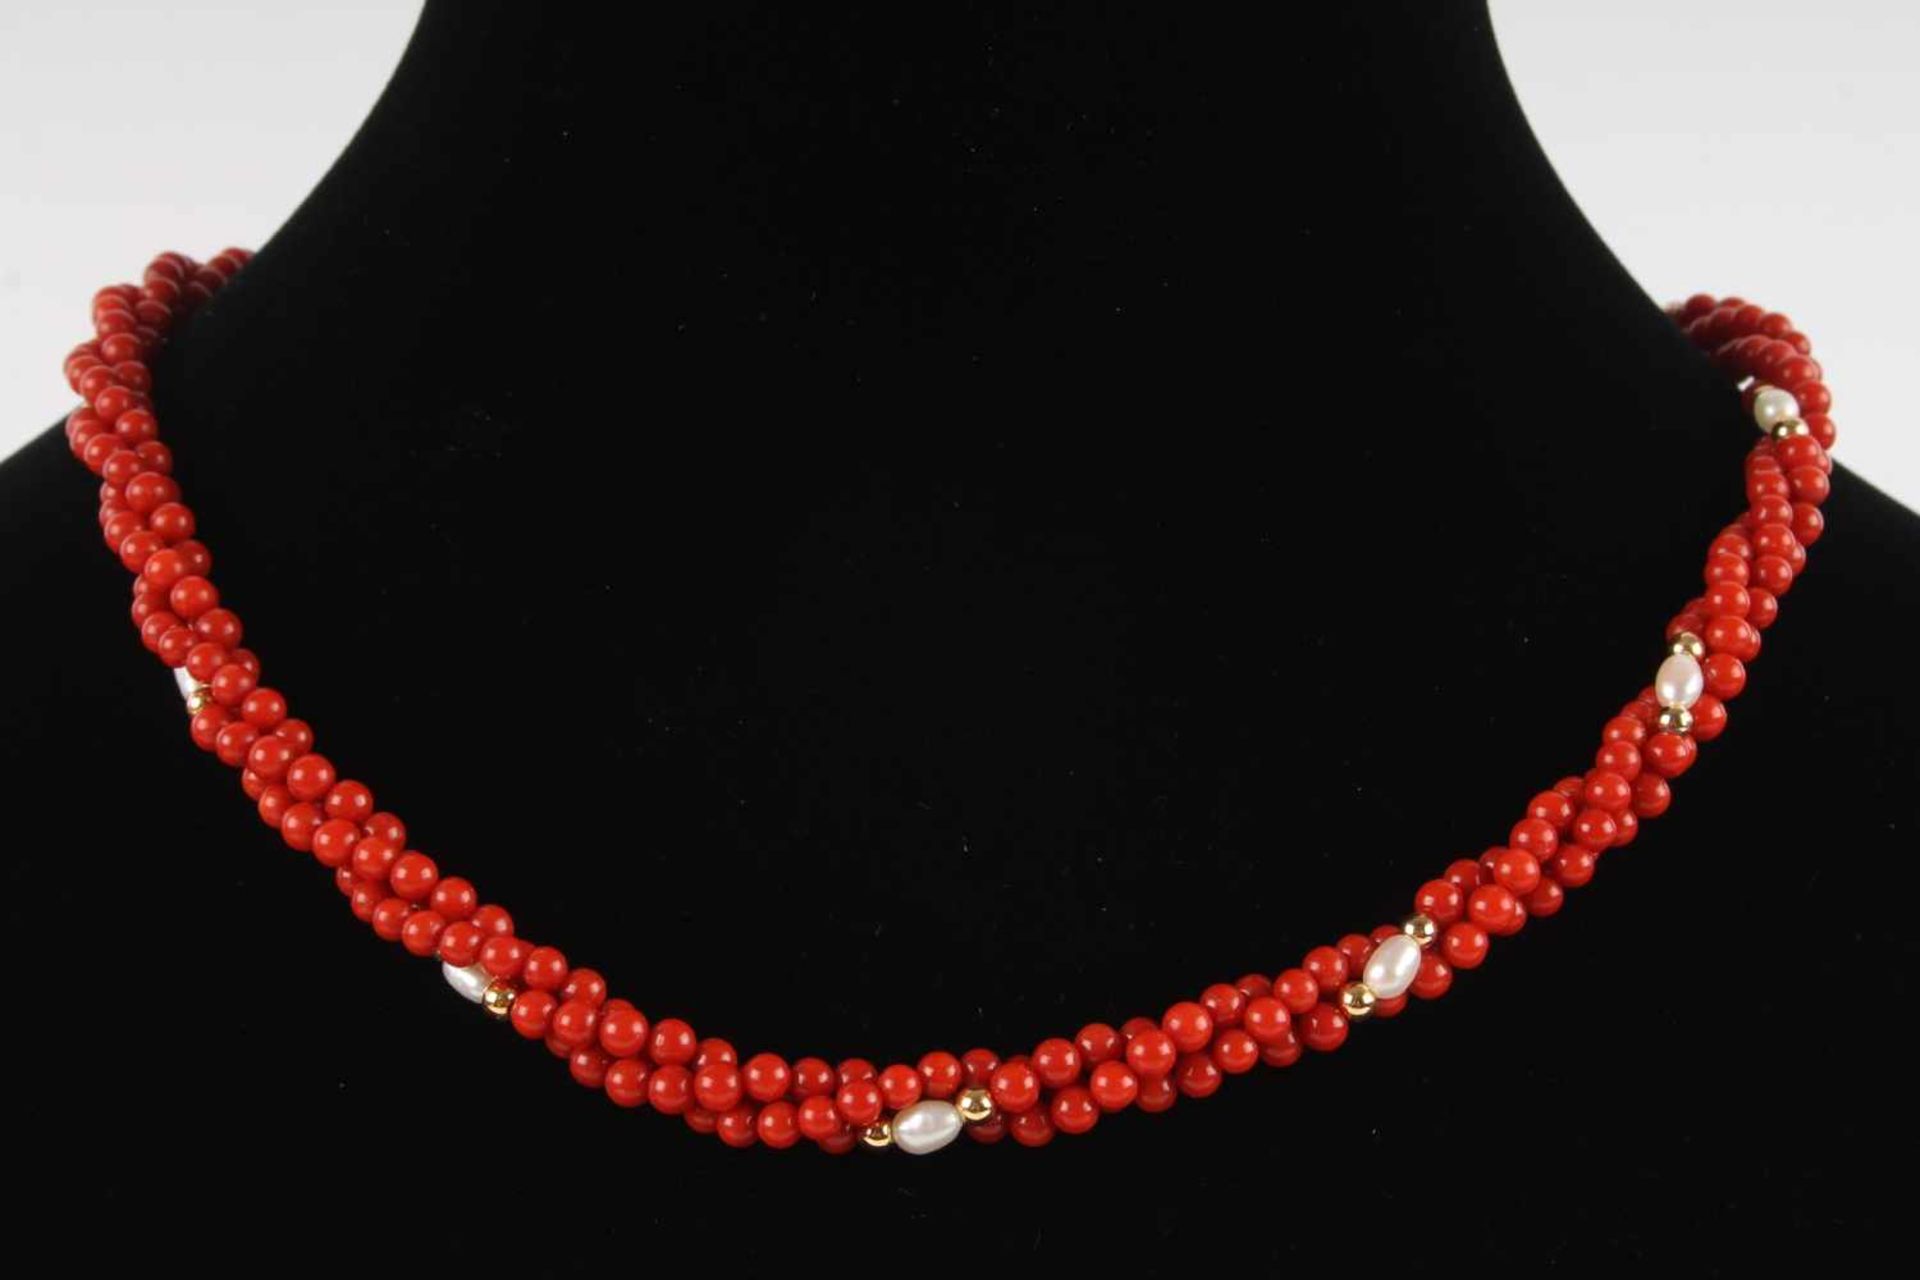 3-reihige Korallenkette mit Goldkugeln und Perlen, coral necklace with gold balls and pearls,